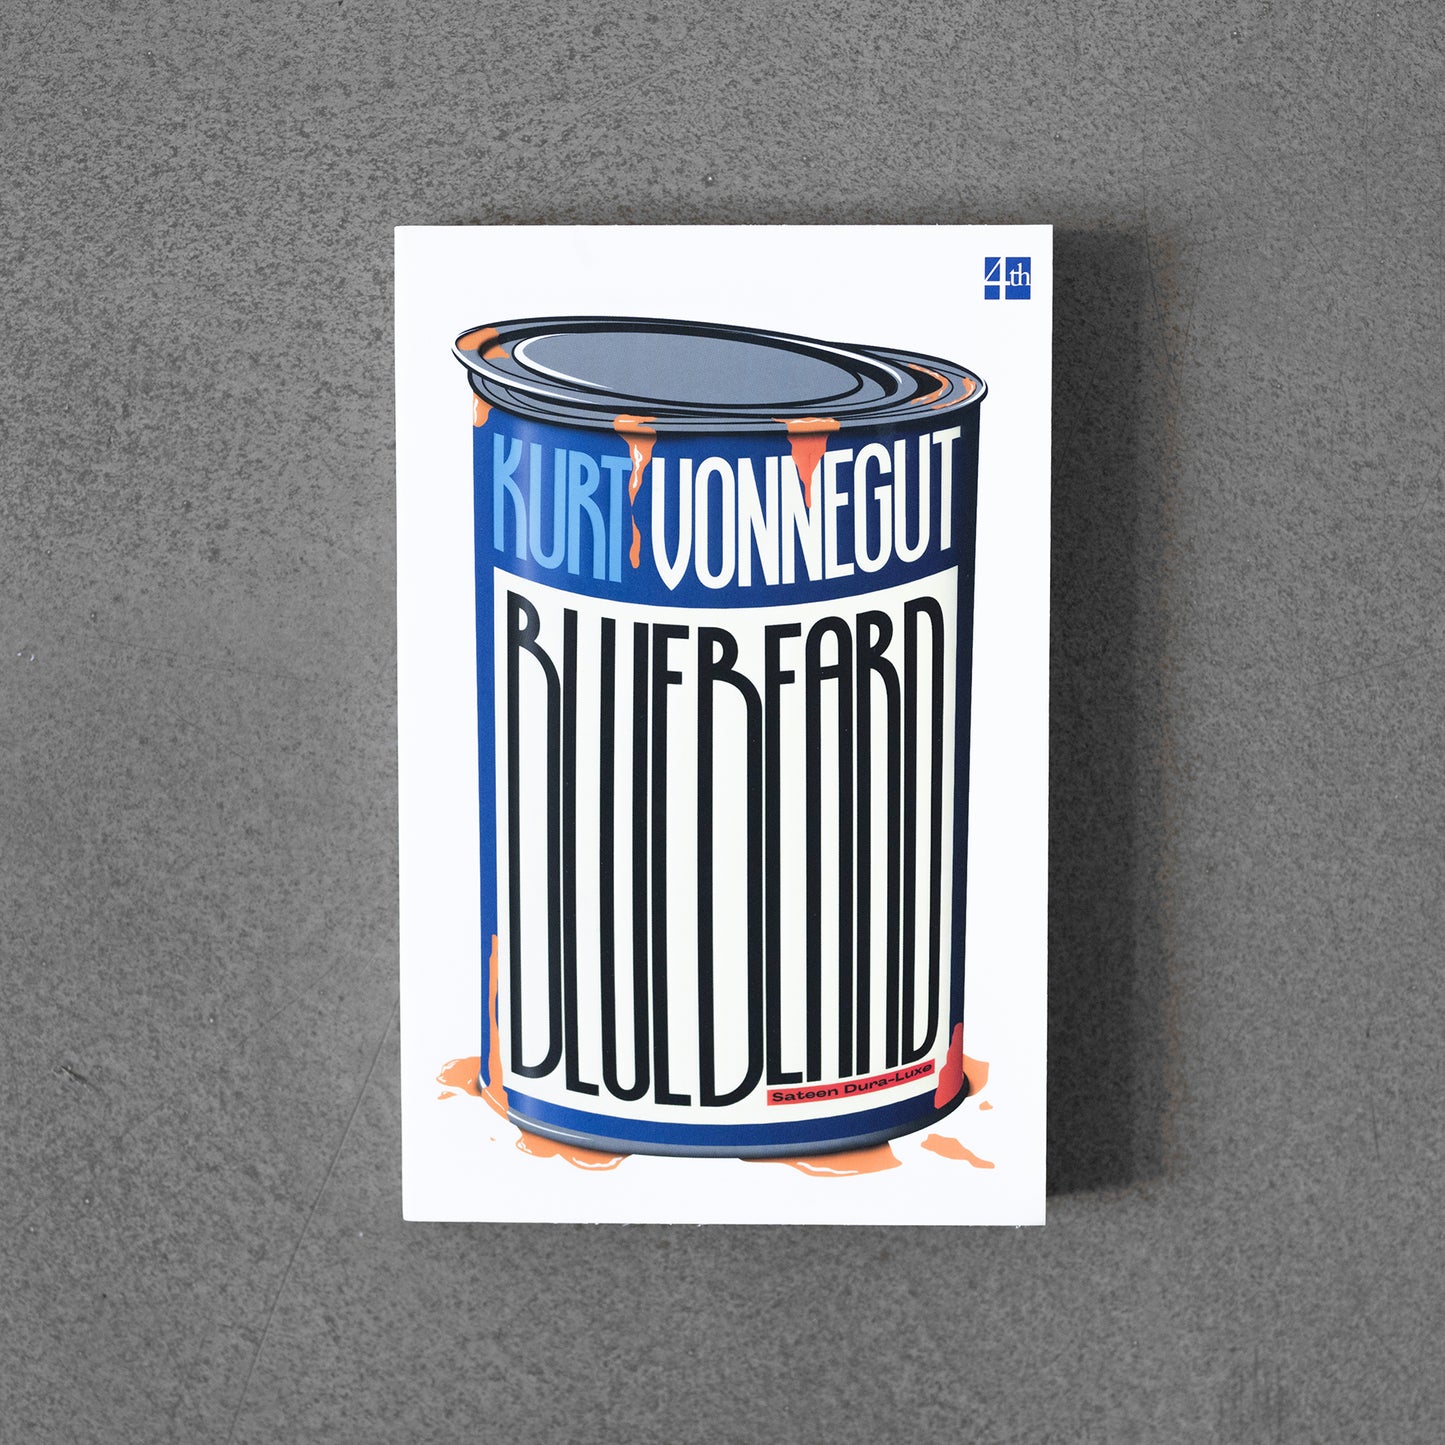 Bluebeard – Kurt Vonnegut